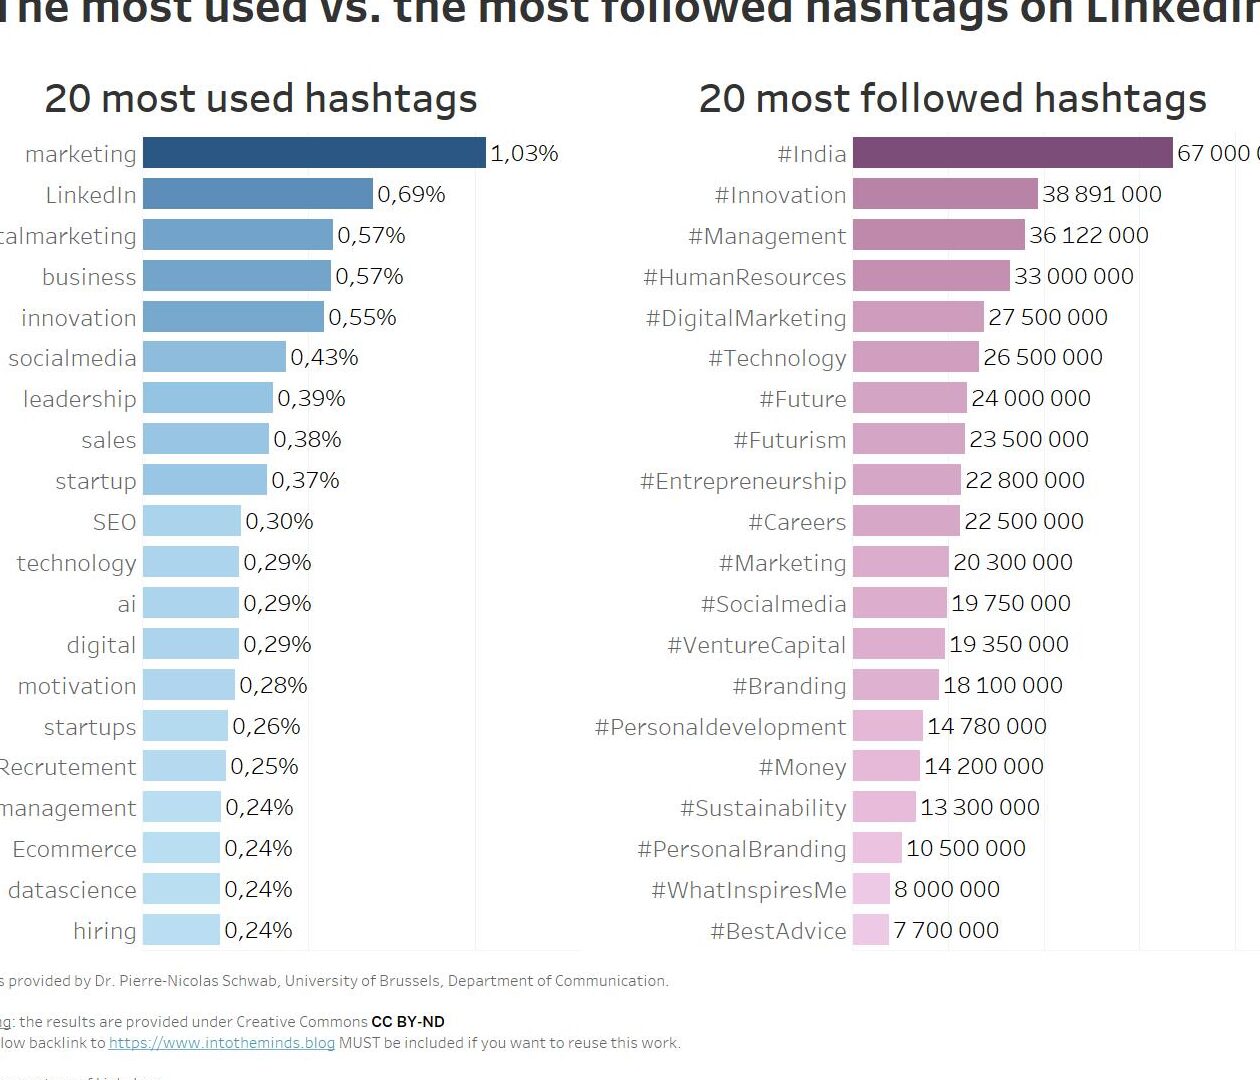 ¿Cuáles son los hashtags más populares en LinkedIn?